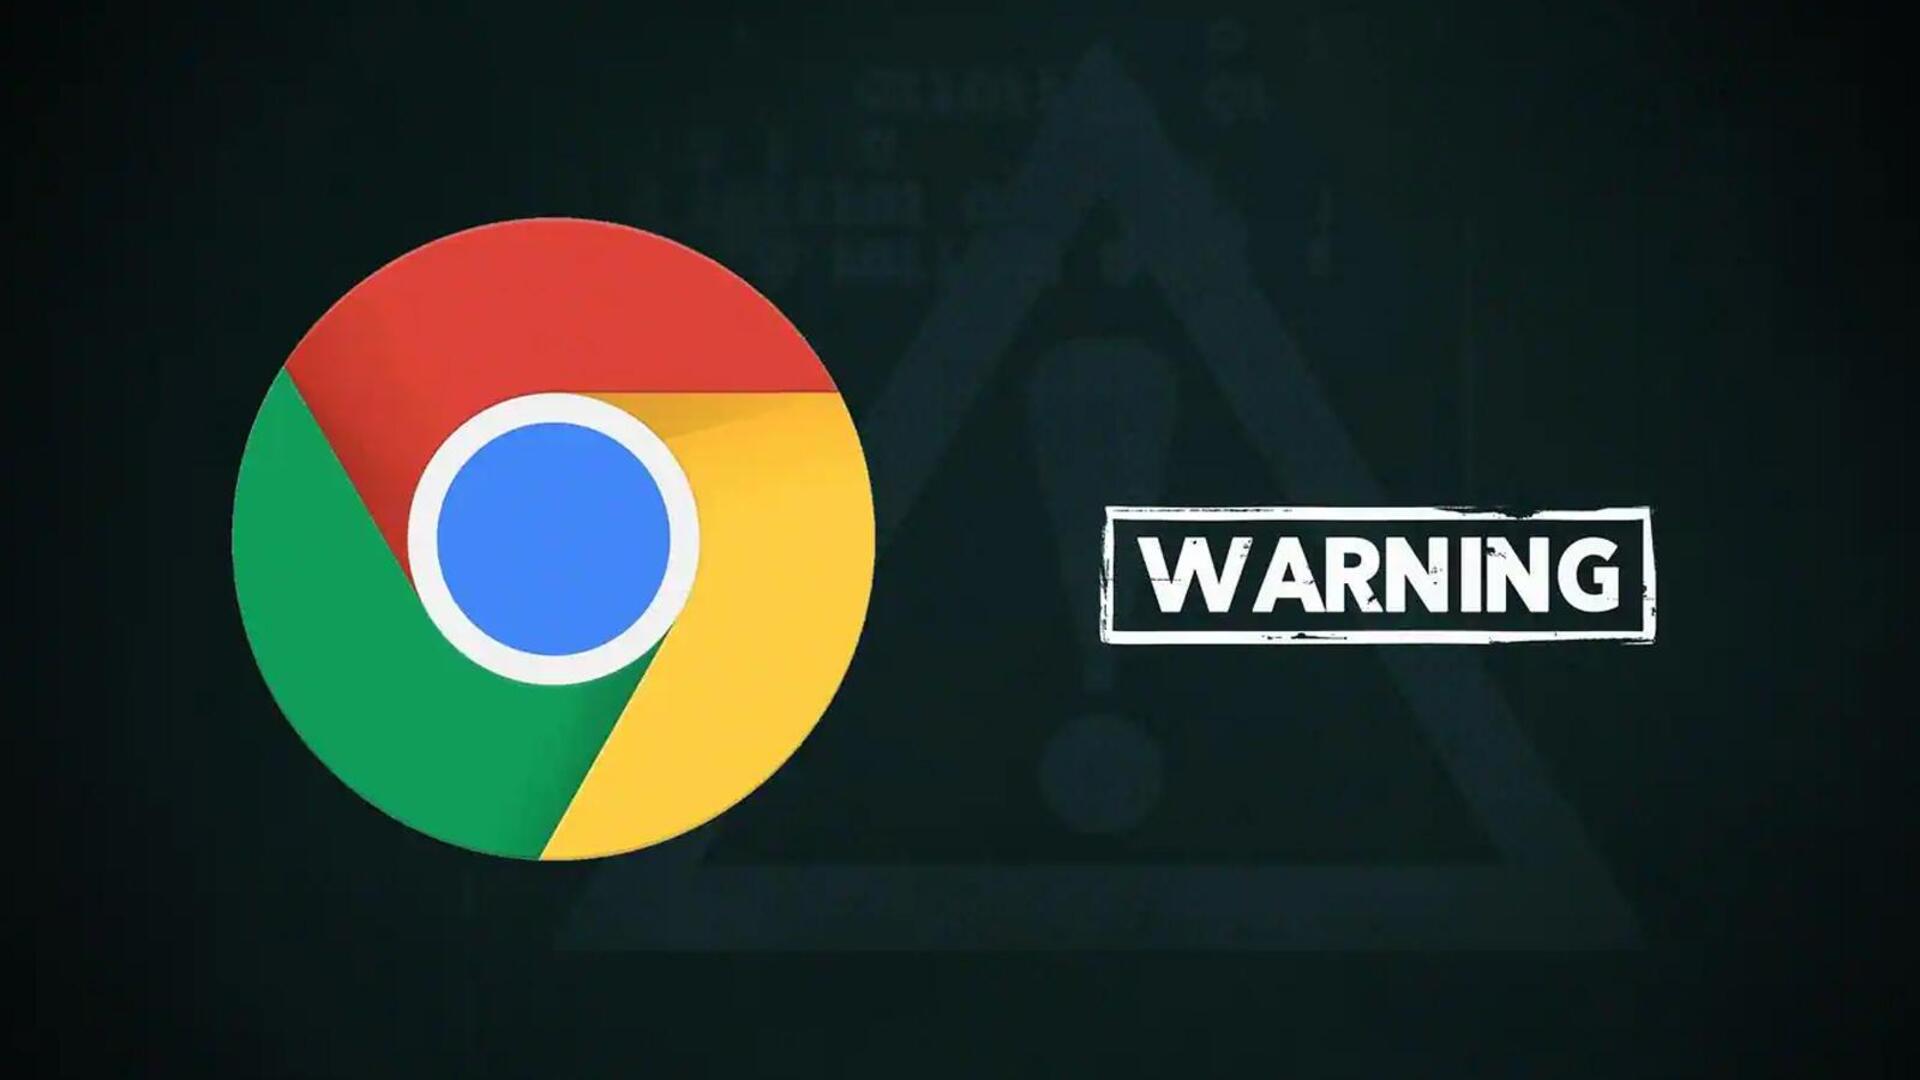 गूगल क्रोम के जरिए साइबर हमला कर रहें जालसाज, आप ऐसे रहें सुरक्षित